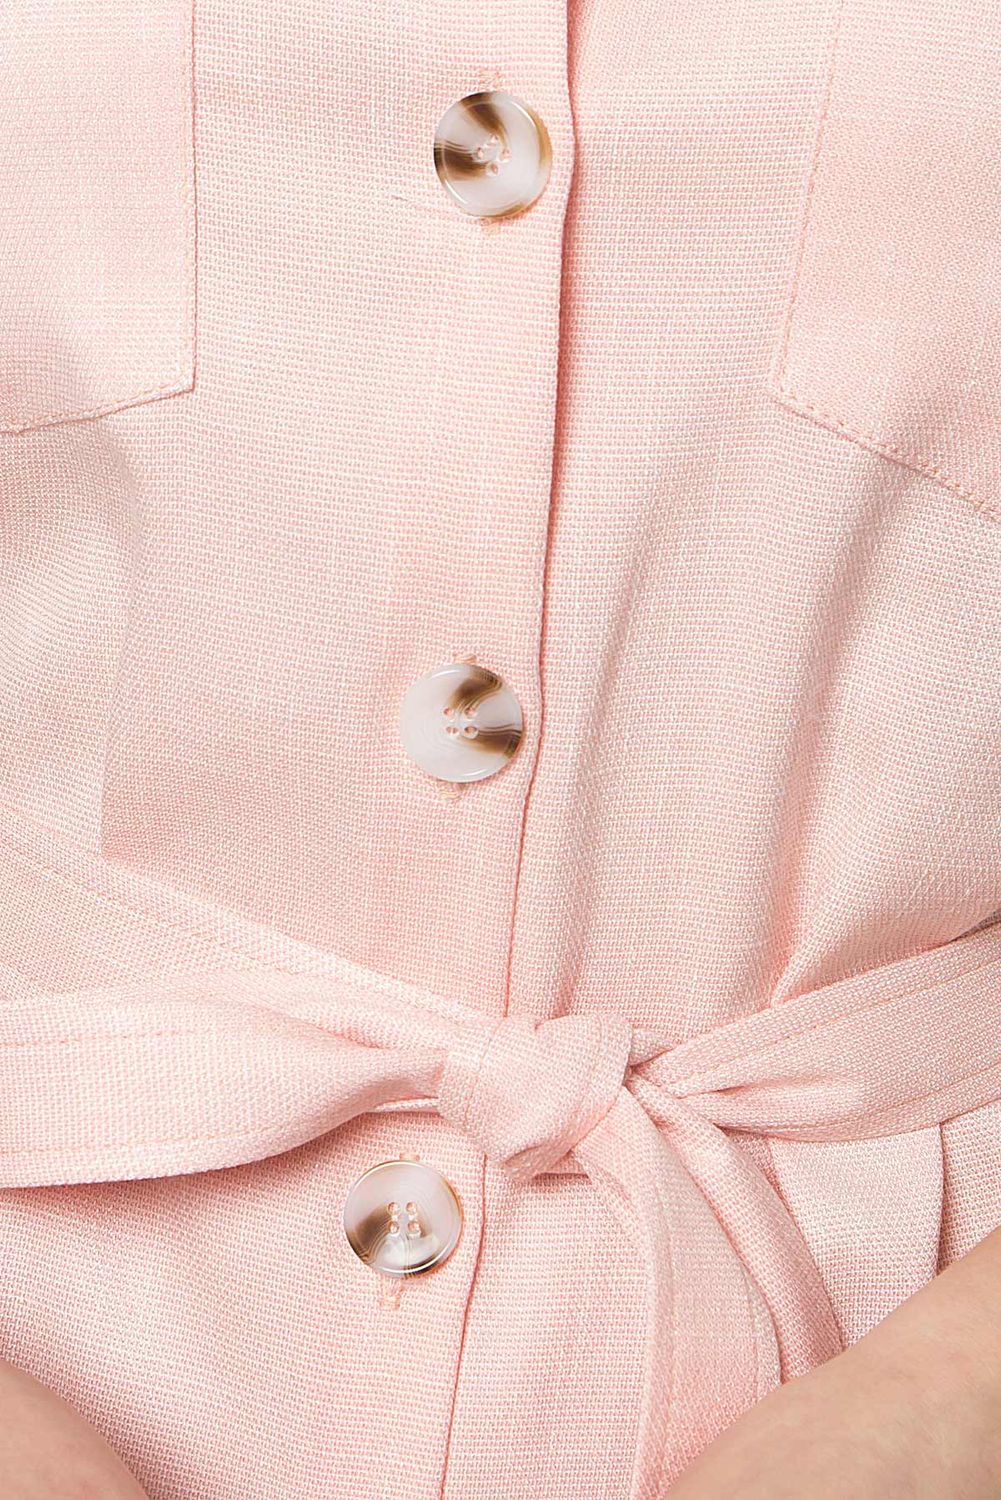 Літнє лляне плаття сорочка ніжно рожевого кольору - фото